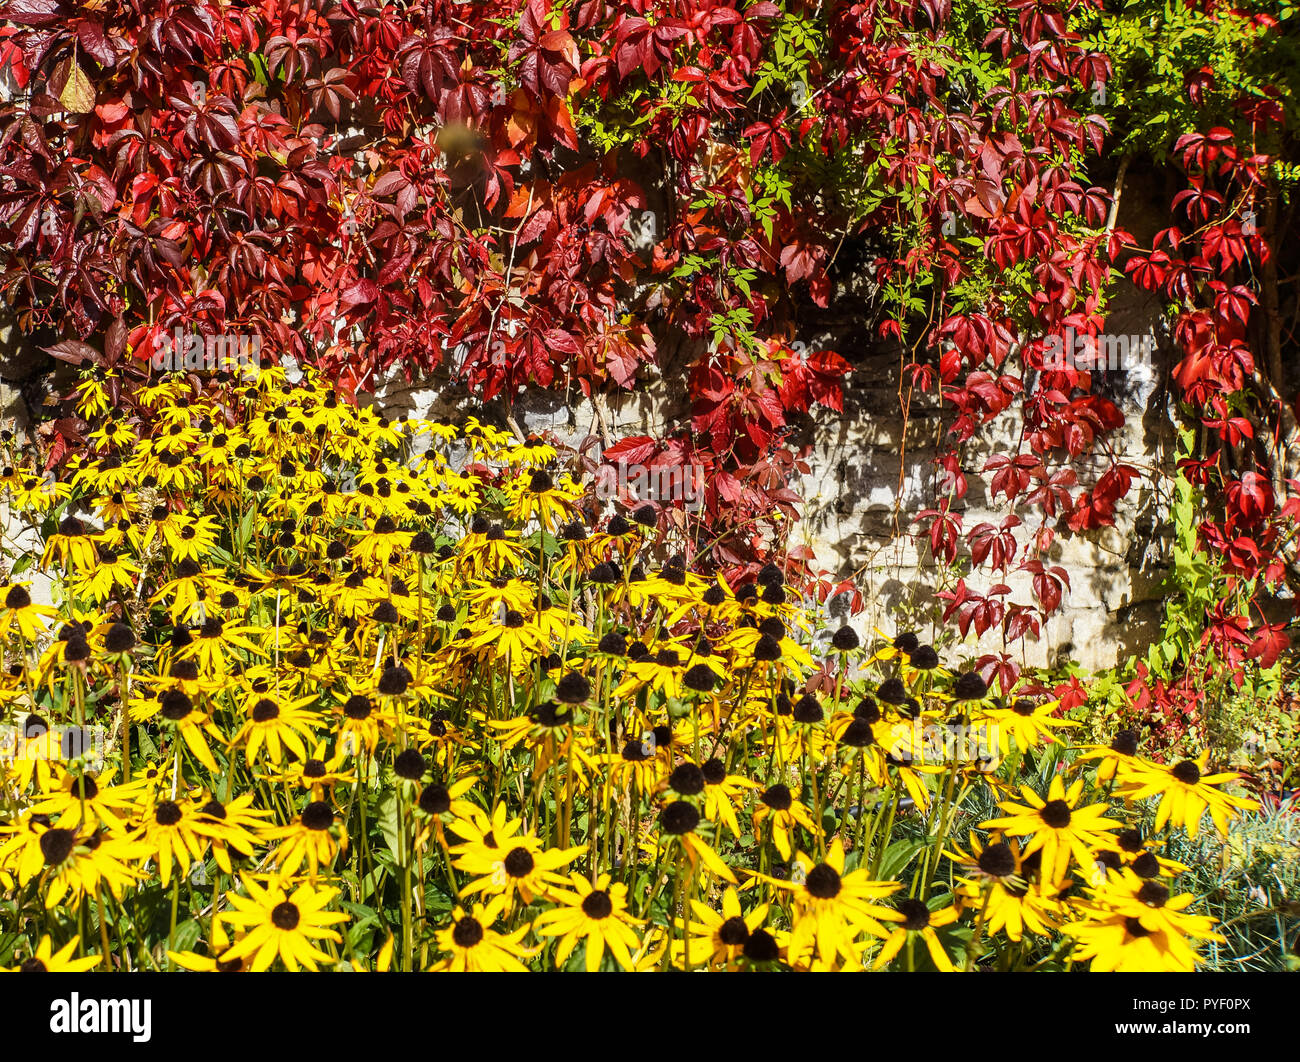 Couleurs jardin feuillage d'automne jaune vif avec black-eyed Susan fleurs et feuilles de vigne rouge 5 branches de lierre mur jardin semé en baisse Banque D'Images